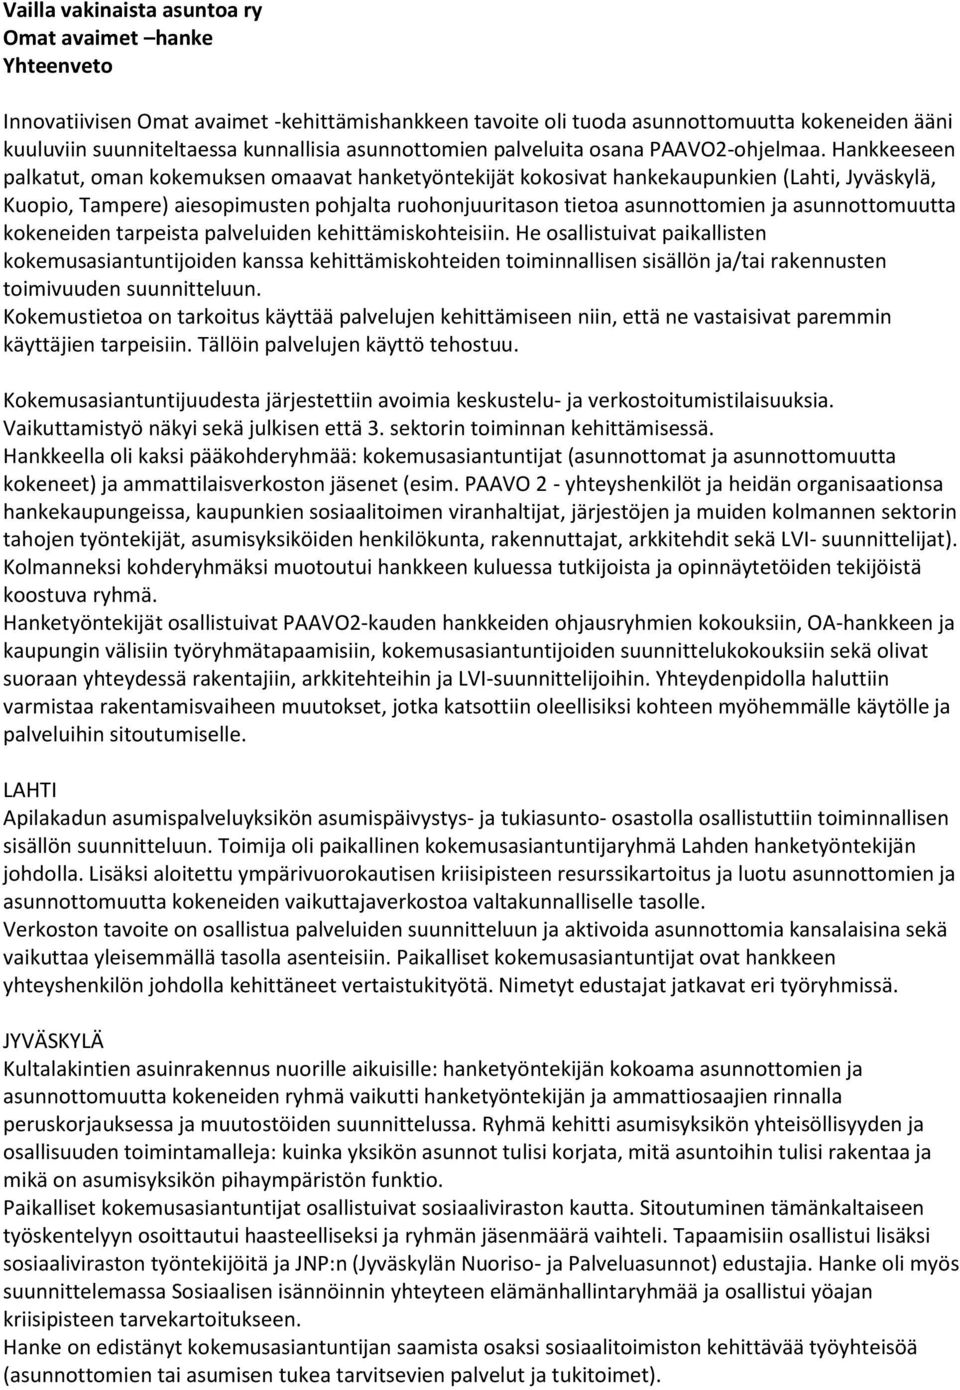 Hankkeeseen palkatut, oman kokemuksen omaavat hanketyöntekijät kokosivat hankekaupunkien (Lahti, Jyväskylä, Kuopio, Tampere) aiesopimusten pohjalta ruohonjuuritason tietoa asunnottomien ja